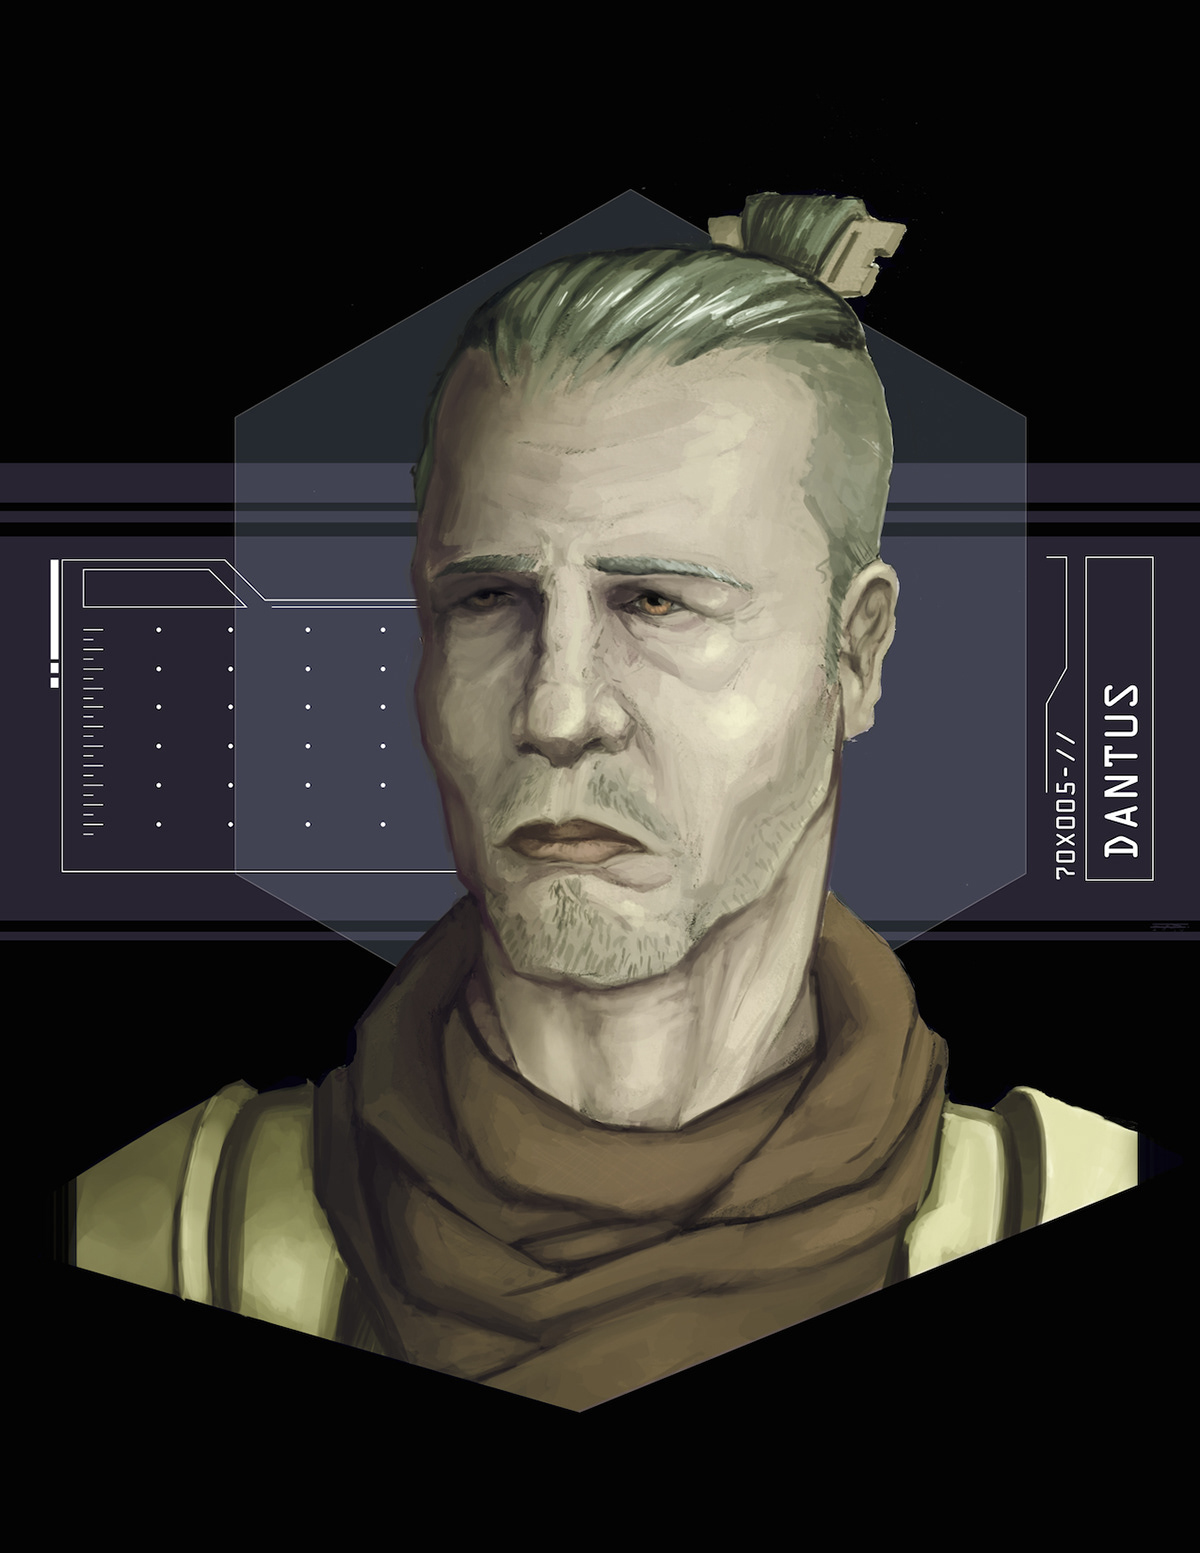 Character concept design sci-fi future portrait